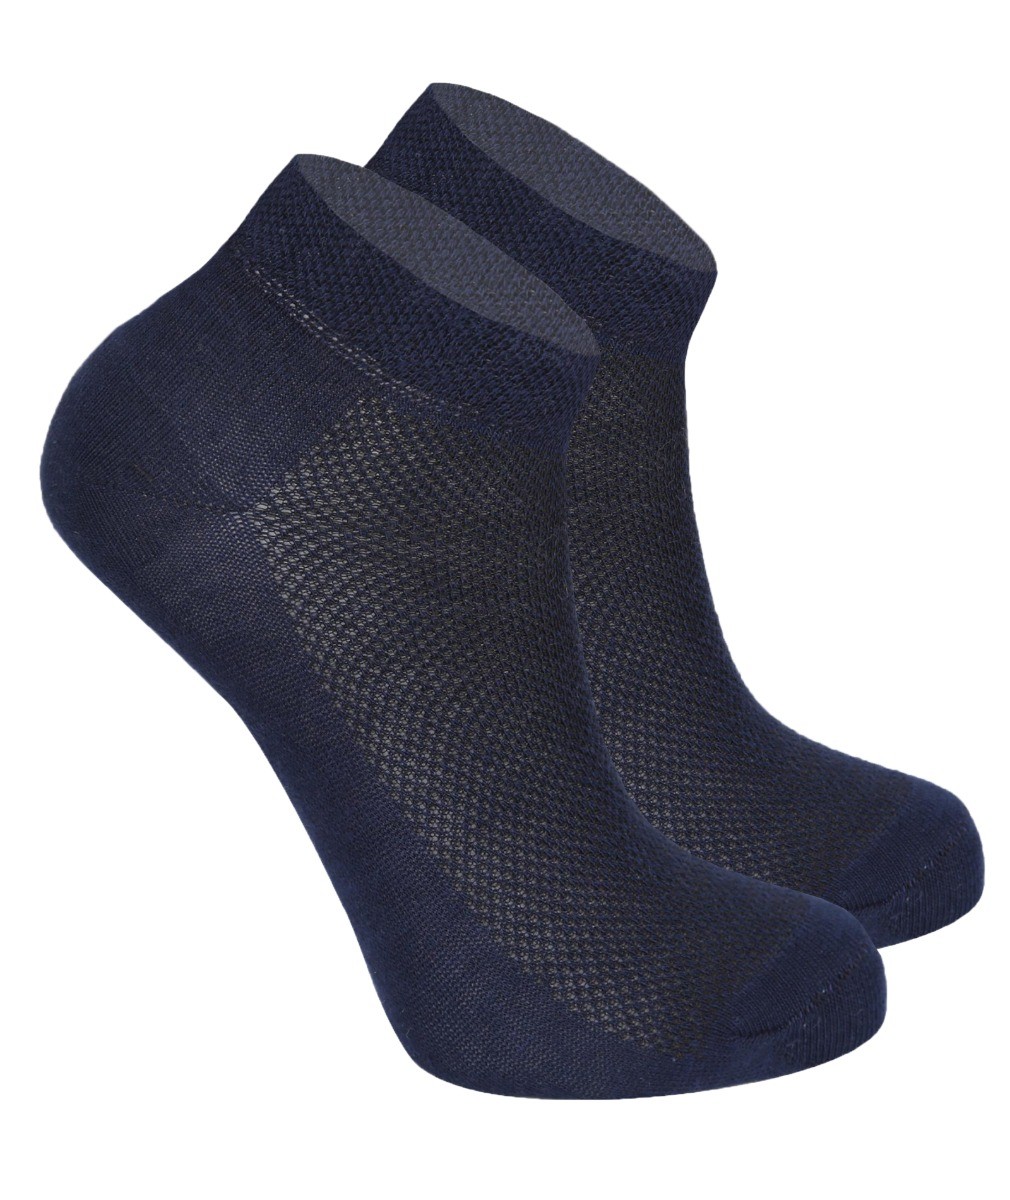 Kinder Unisex Socken aus Baumwolle - Navy blau